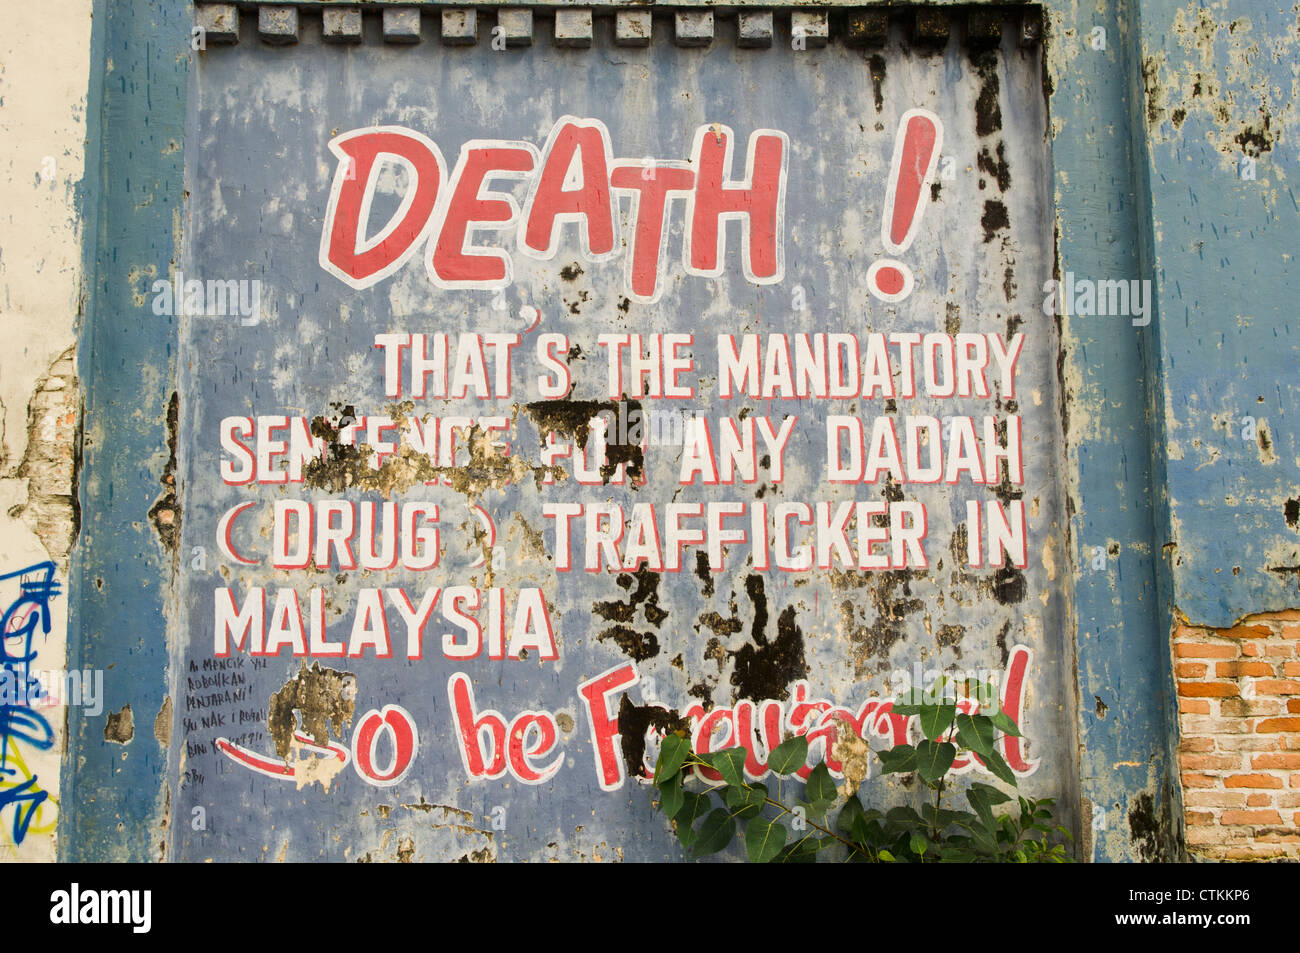 Das Pudu Gefängnis war ein Gefängnis in Kuala Lumpur, Malaysia. Zeichnung an der Wand für die Botschaft der Todesurteile für Drogenhändler. Stockfoto